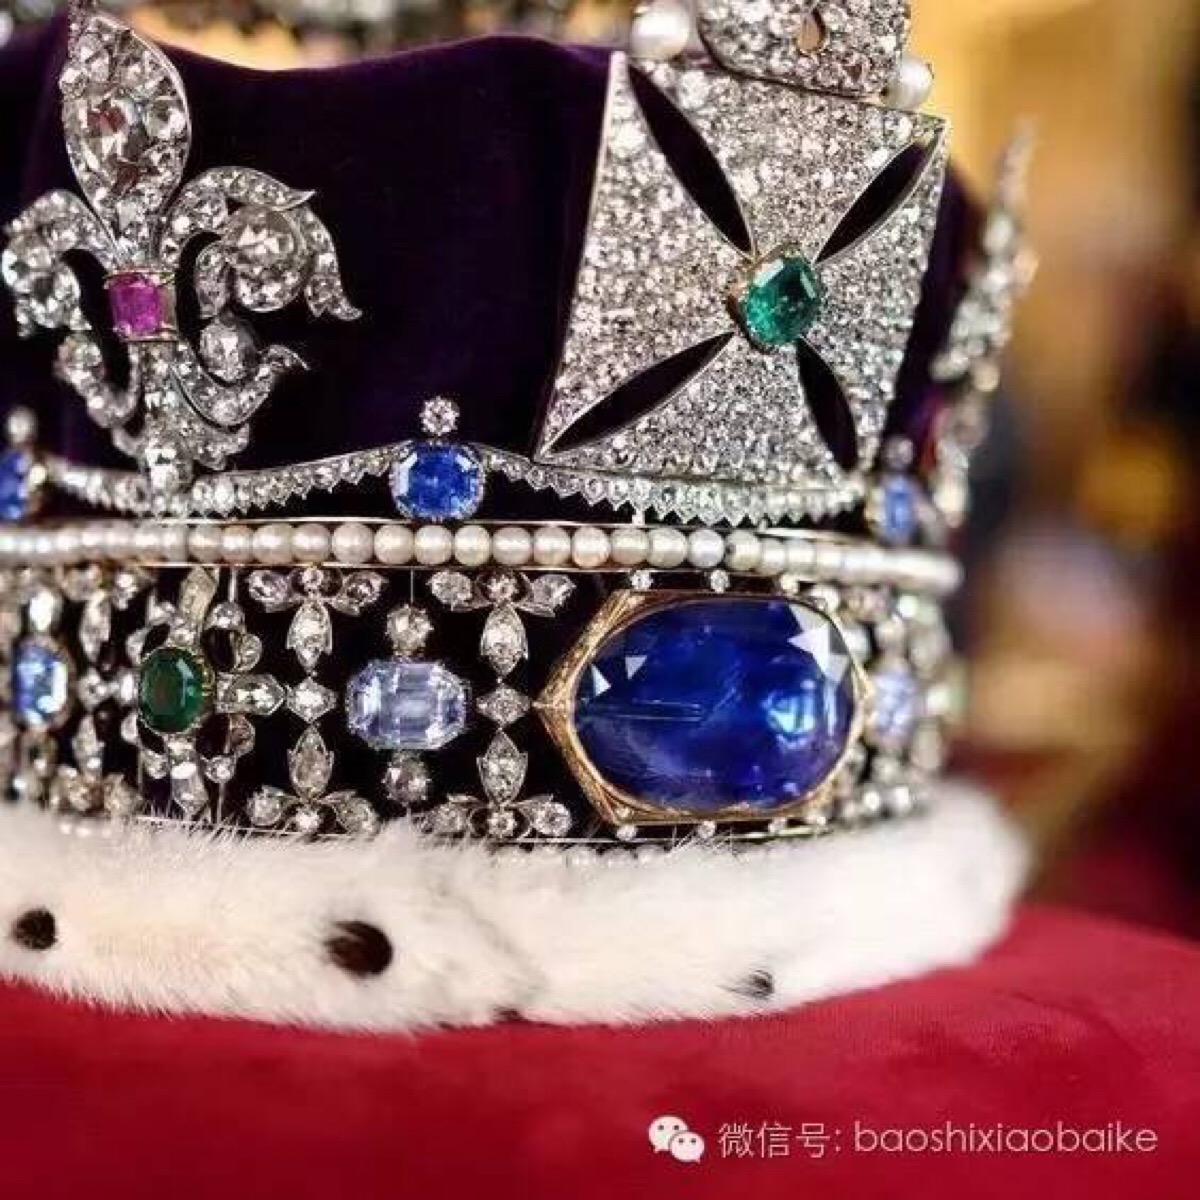 王室还有一颗传奇的蓝宝石——"斯图亚特蓝宝石",也镶嵌在英帝国王冠